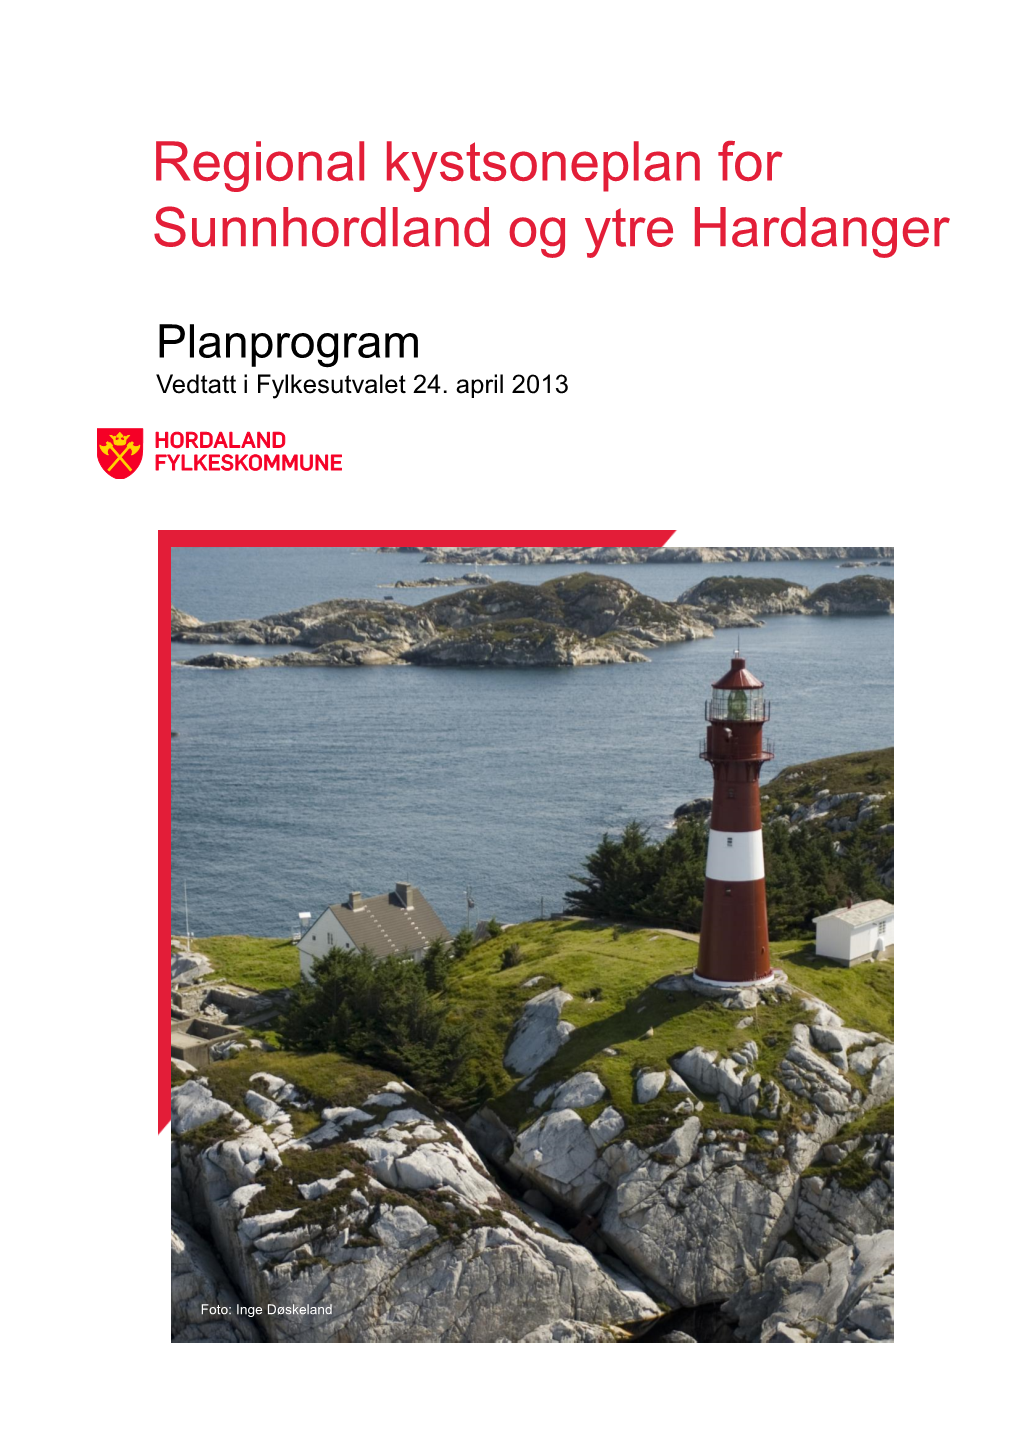 Regional Kystsoneplan for Sunnhordland Og Ytre Hardanger